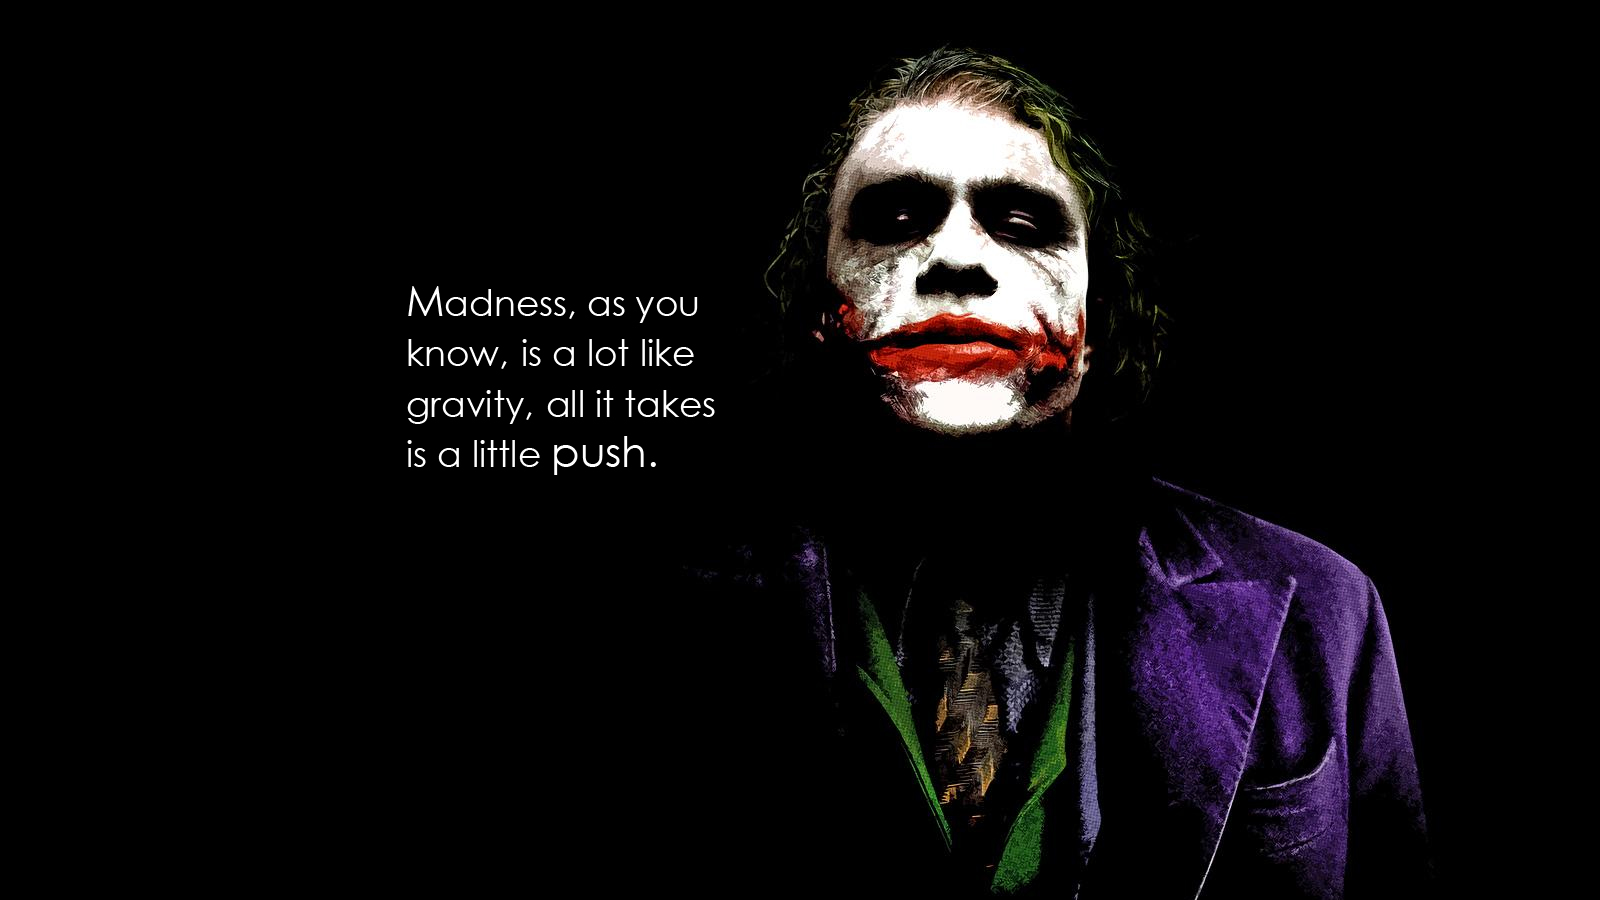  Joker  Quote  Best Wallpapers 